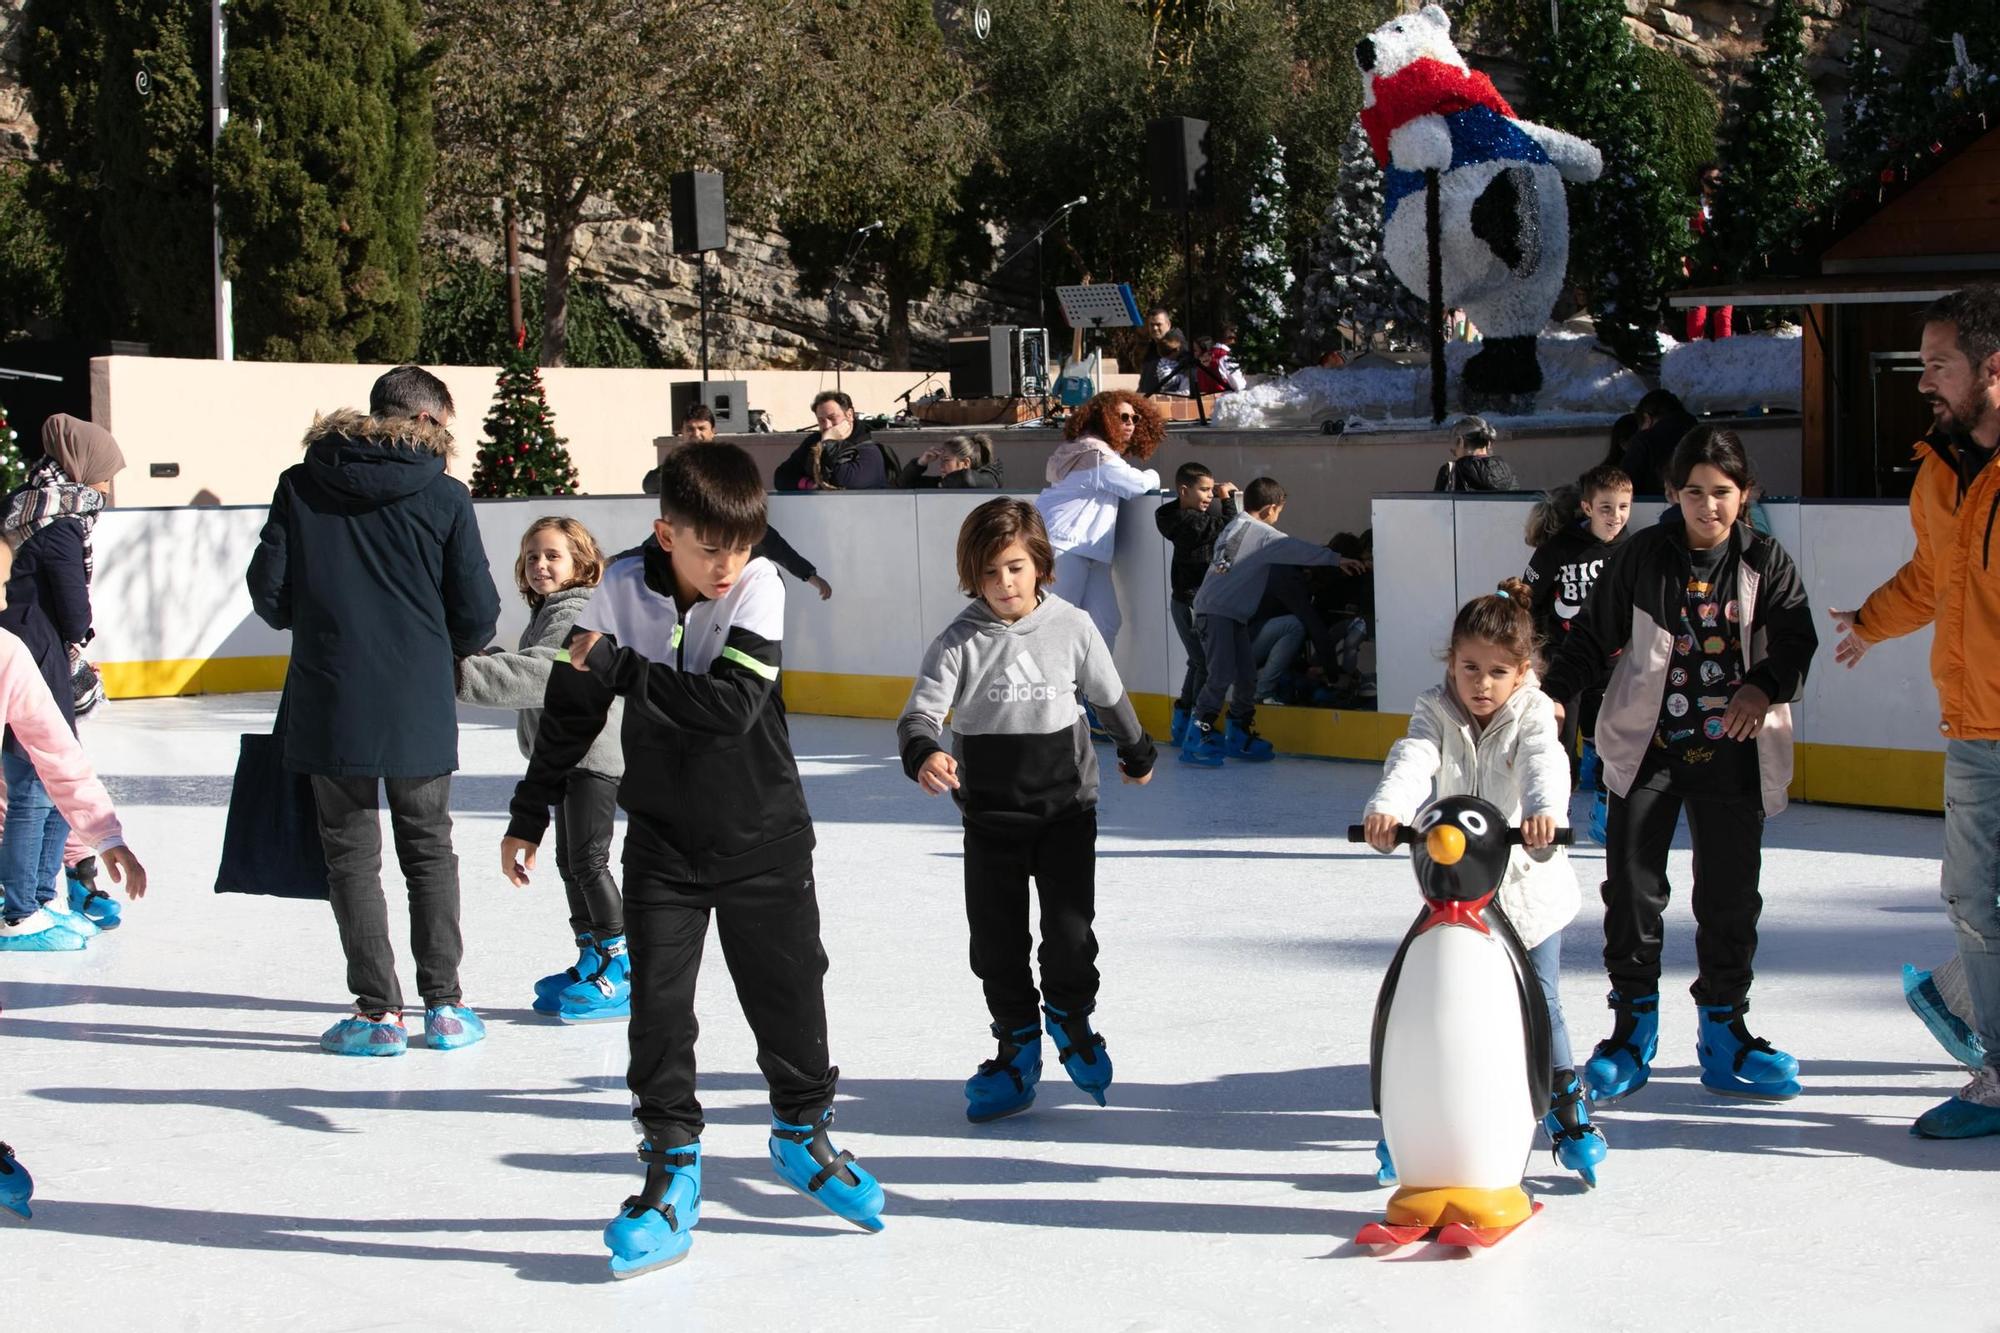 Mira aquí las imágenes del primer día de la pista de hielo en el Parque Reina Sofía